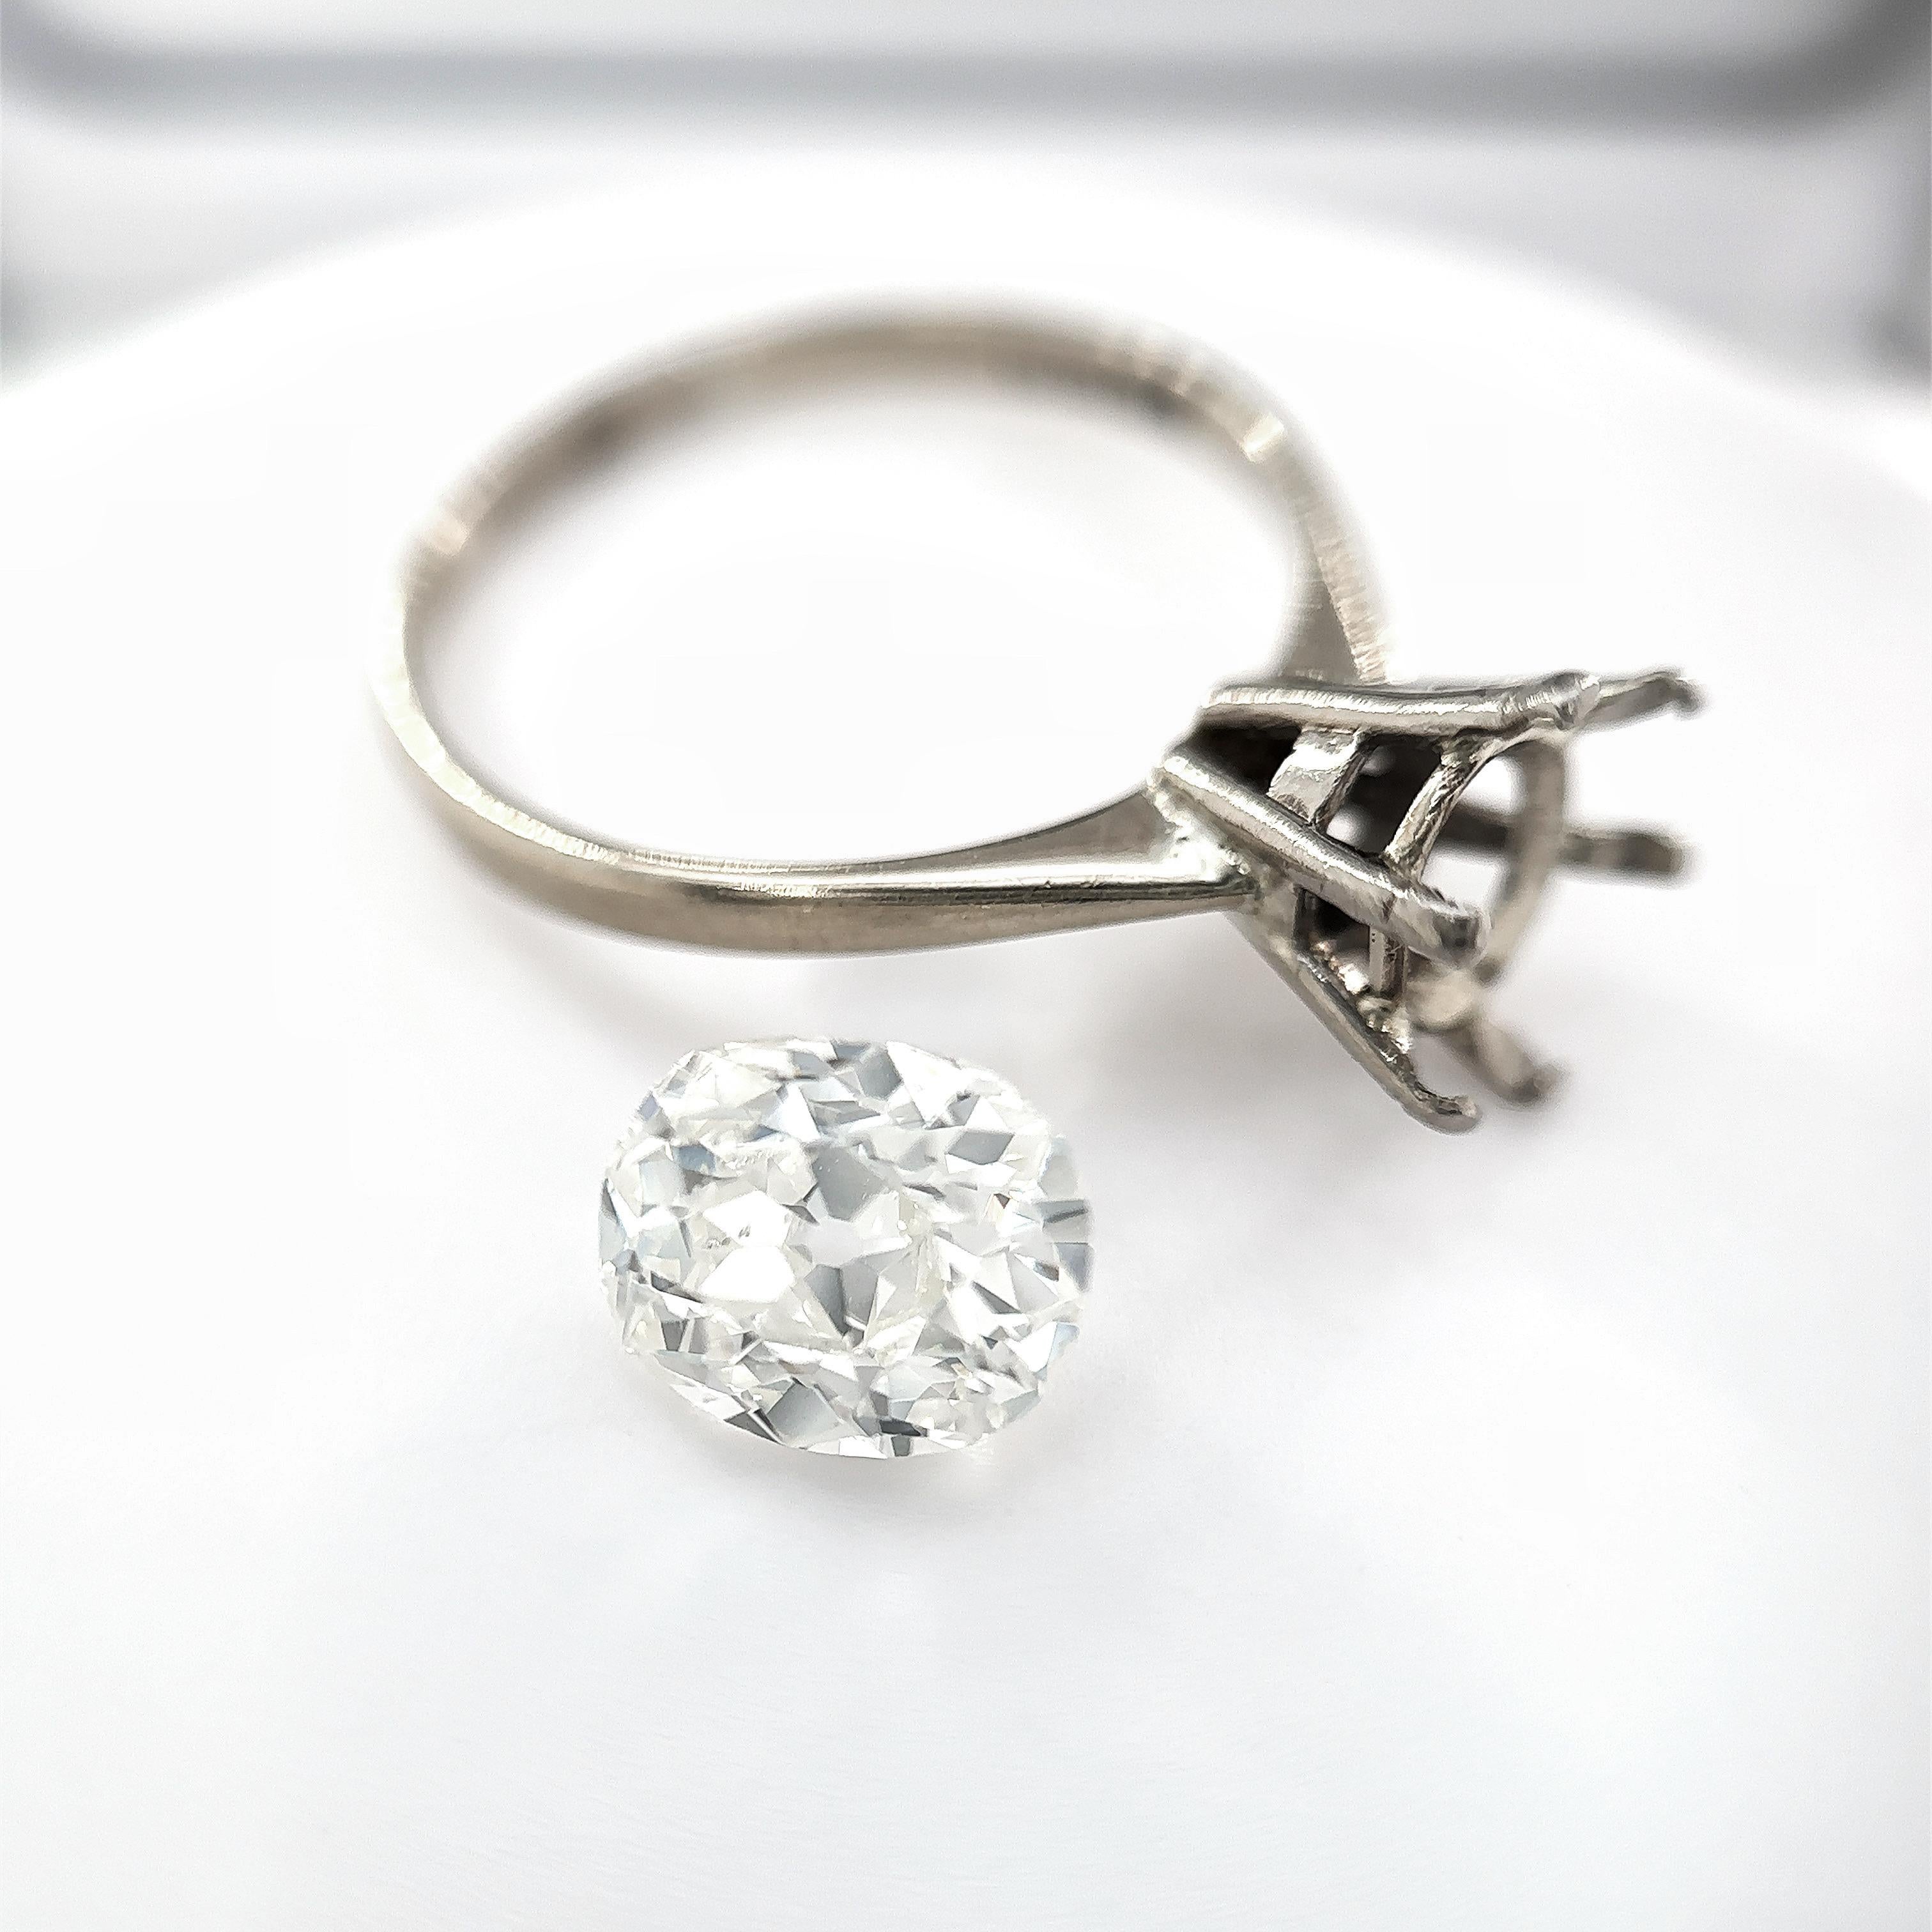 Dieser exquisite Diamantring im Altminenschliff mit 1,69 Karat ist wahrlich ein zeitloser Schatz. Dieser mit äußerster Präzision und Liebe zum Detail gefertigte Ring zeigt die außergewöhnliche Schönheit und Brillanz eines seltenen Diamanten im